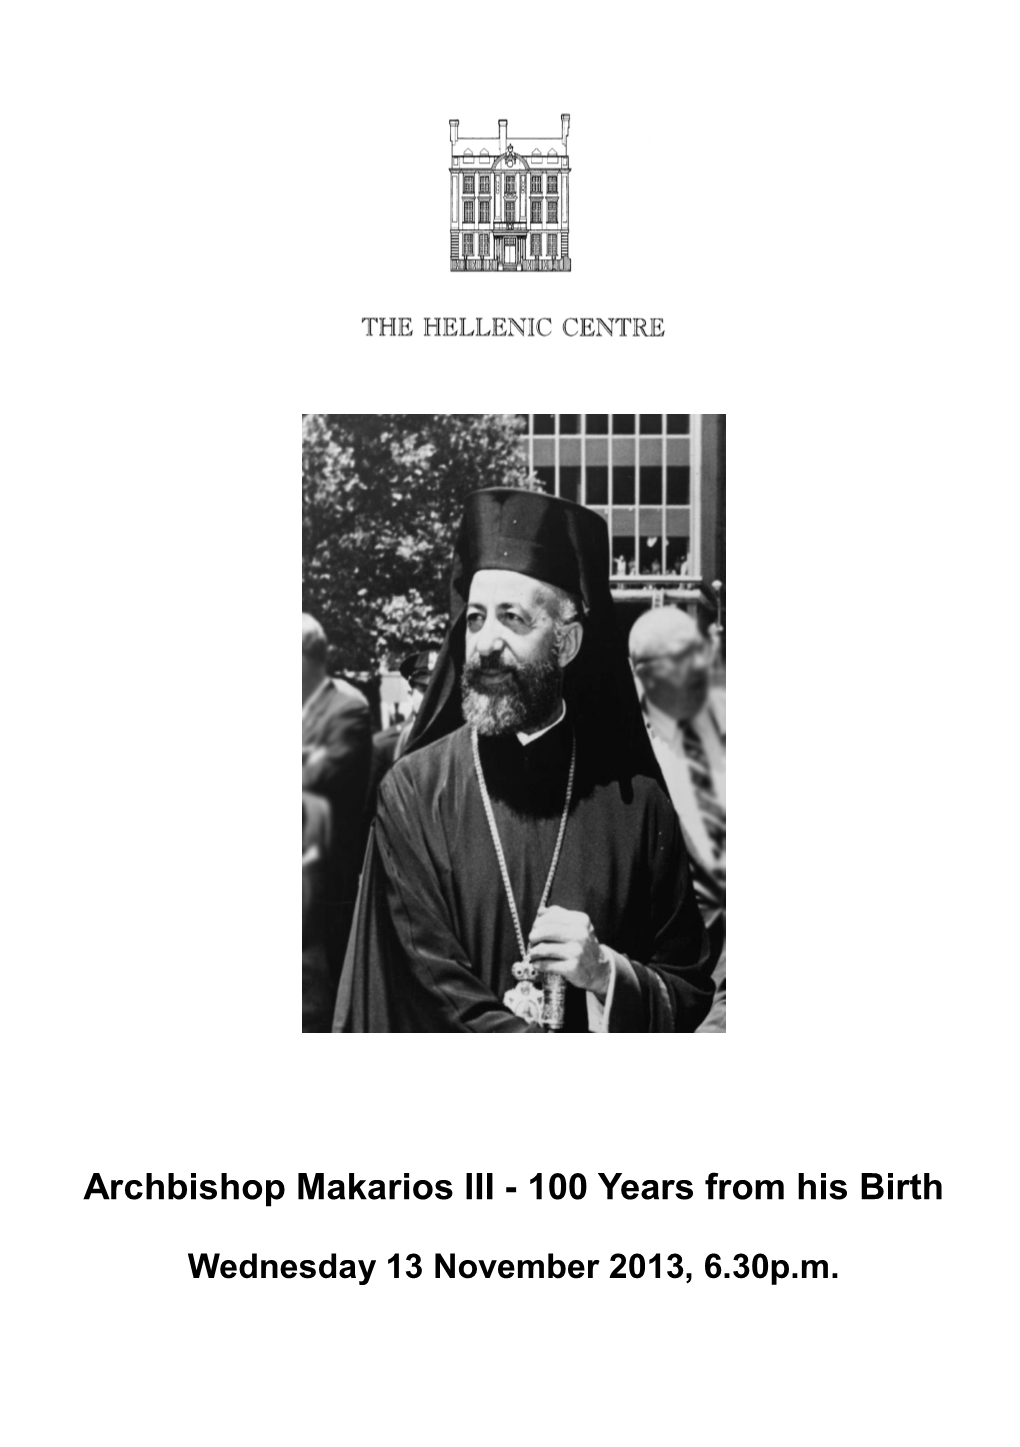 Archbishop Makarios III - 100 Years from His Birth